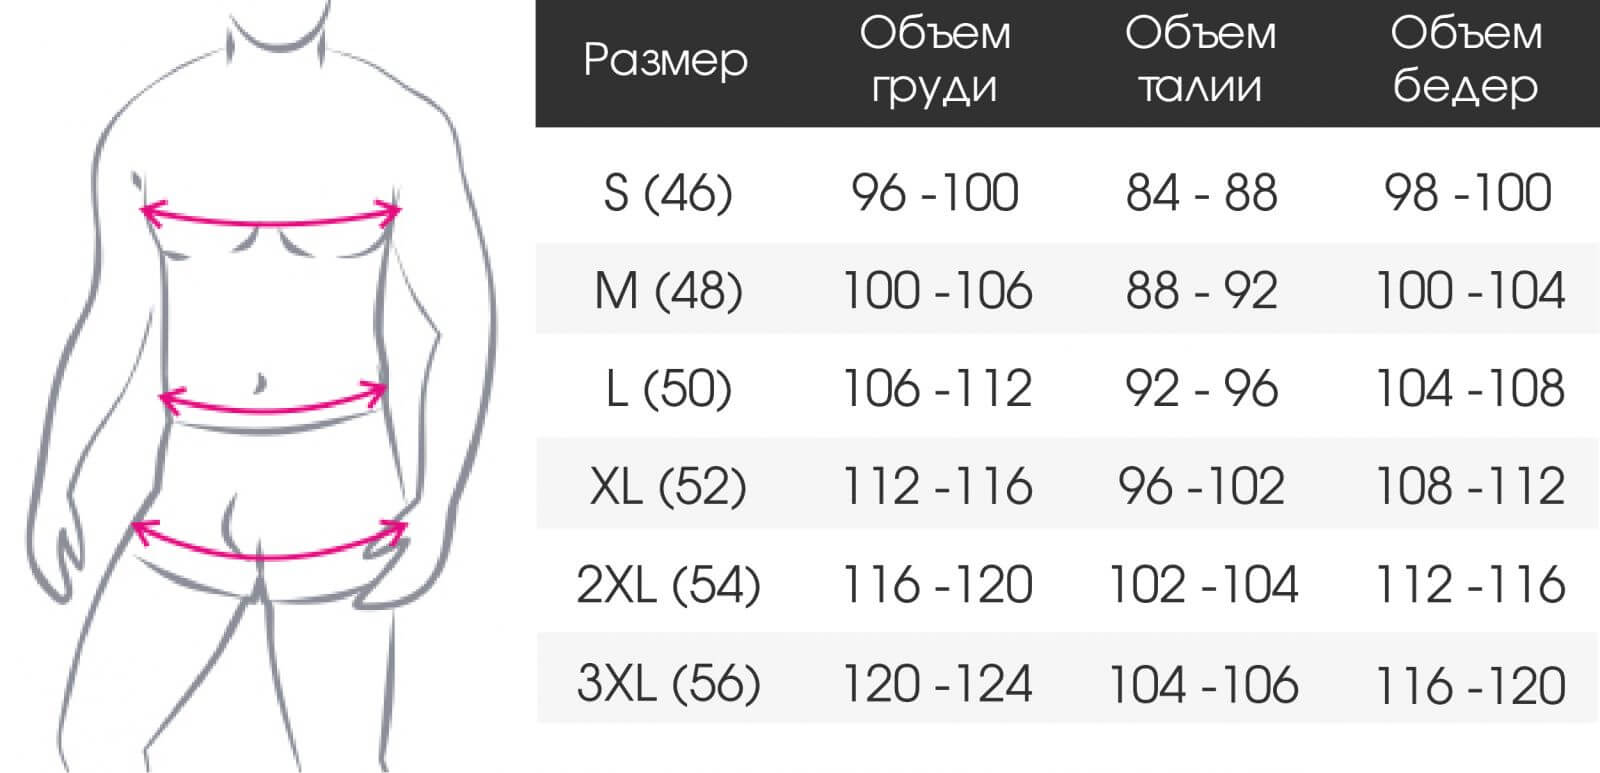 таблица размеров одежды в груди фото 2